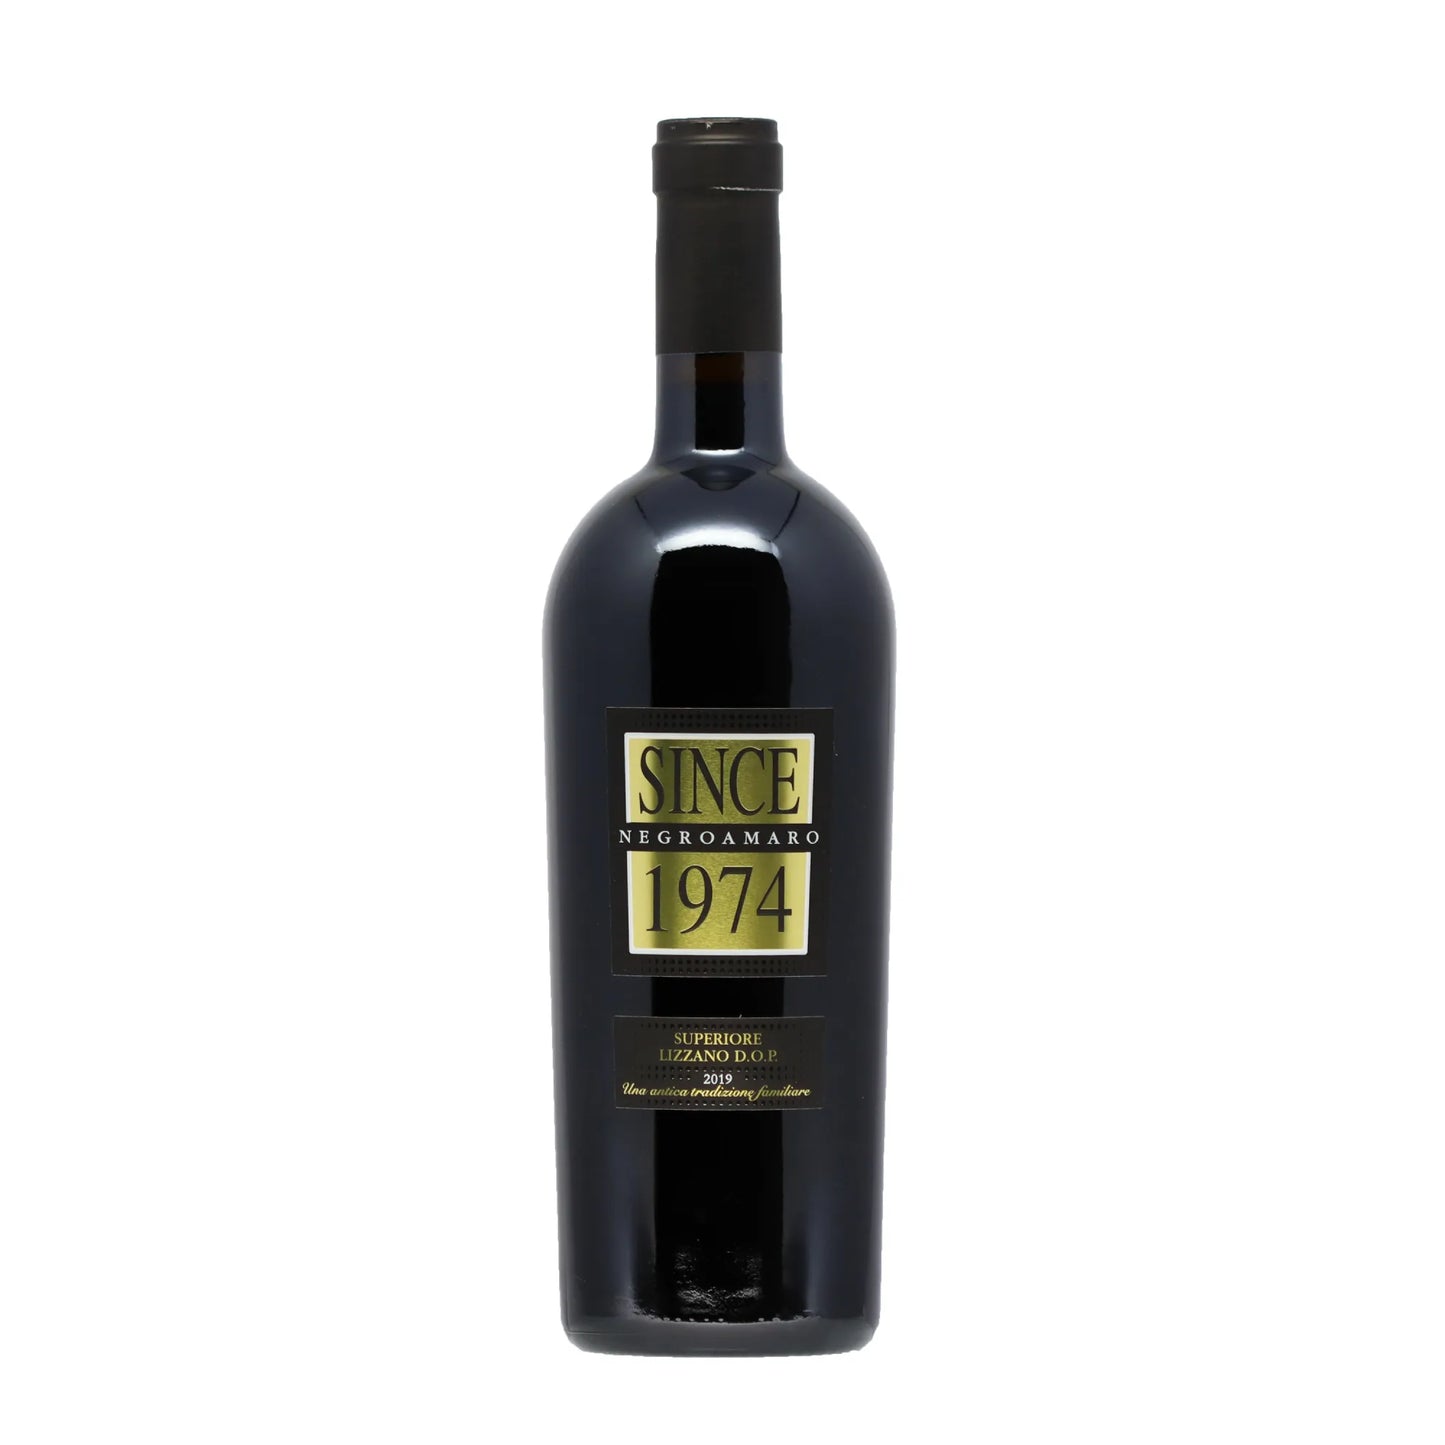 Since 1974 Negroamaro 2019 Tenute Eméra Italien - Rotwein - Wein